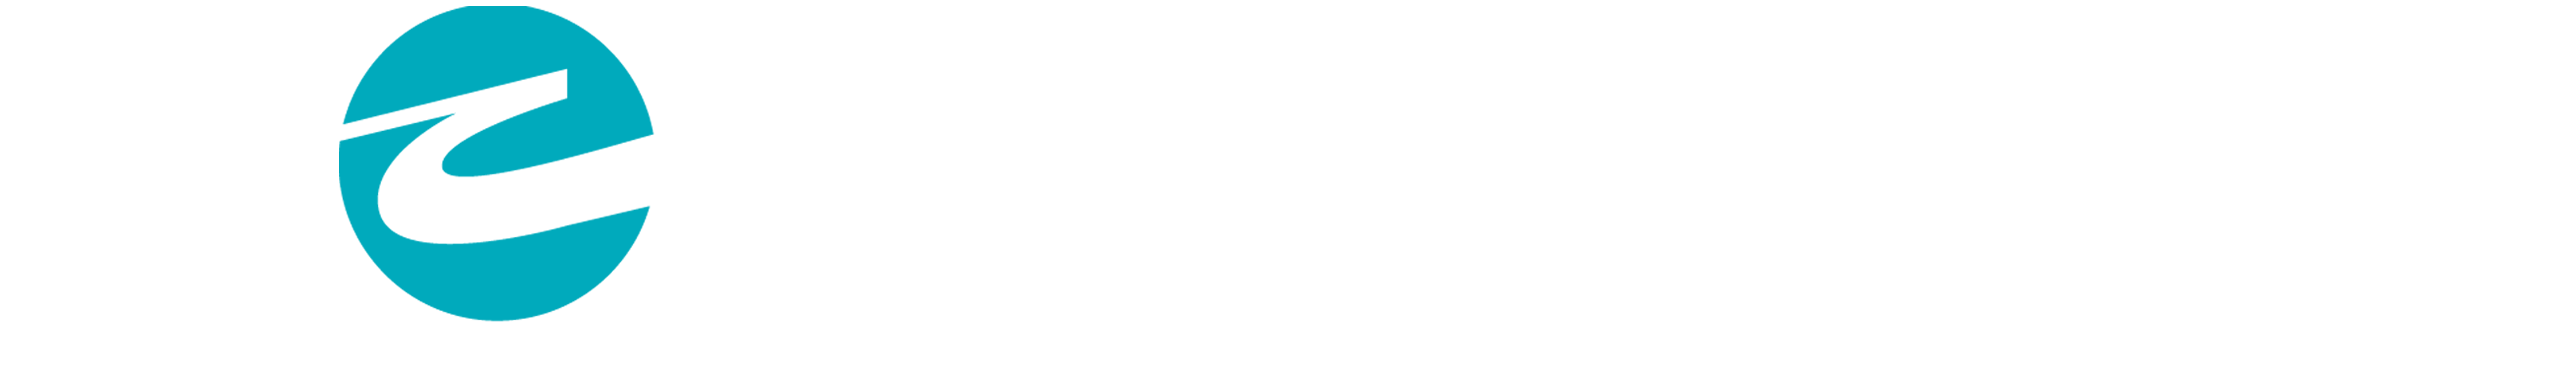 Clarion Pointe logo